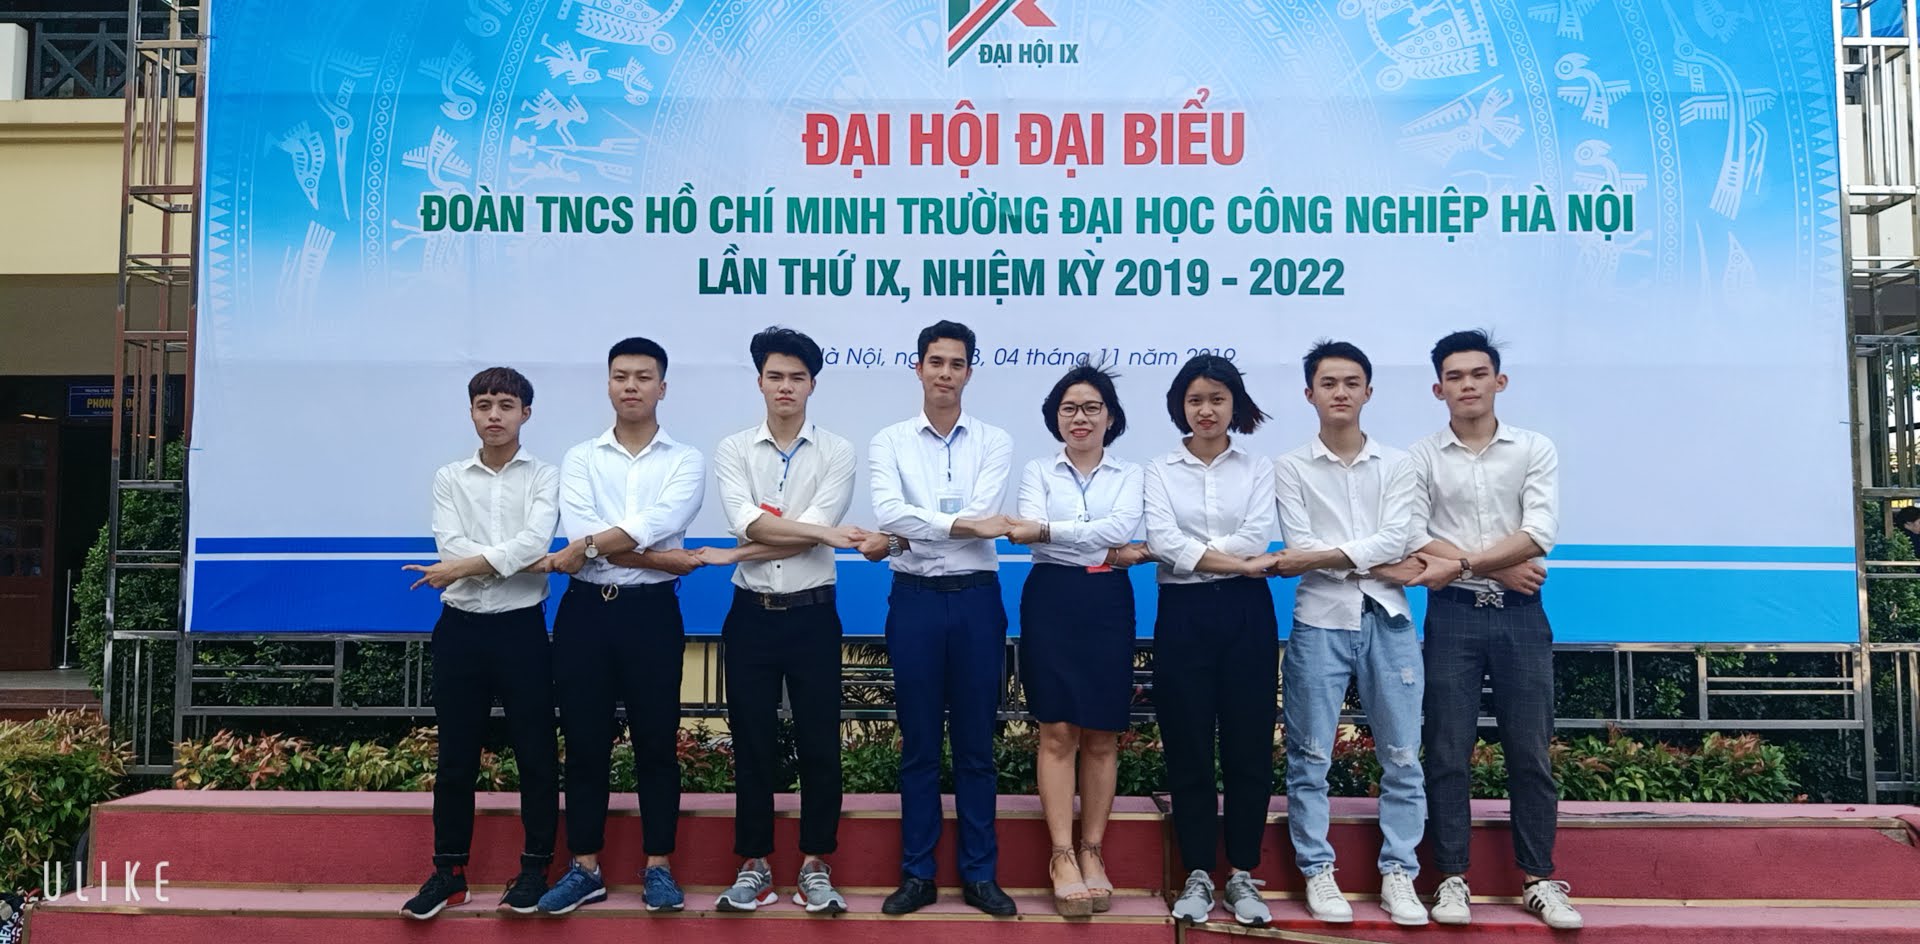 Đoàn đại biểu Liên chi đoàn Trung tâm Việt Nhật dự Đại hội đại biểu Đoàn TNCS Hồ Chí Minh trường Đại học Công nghiệp Hà Nội lần thứ IX, nhiệm kỳ 2019 – 2022